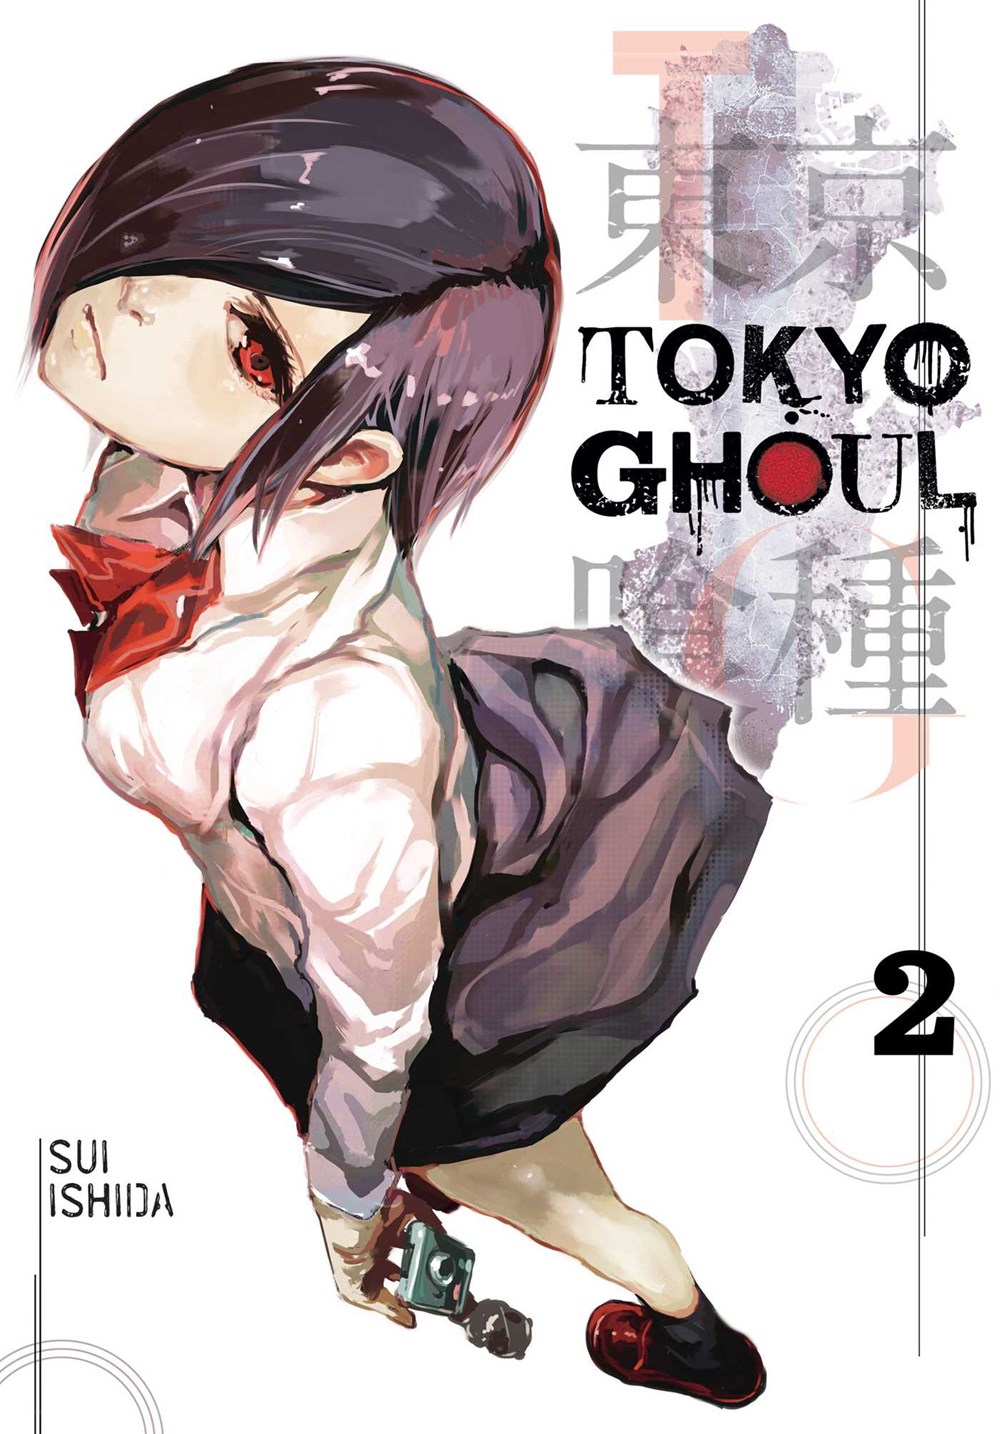 Tokyo Ghoul  Vol. 2  2